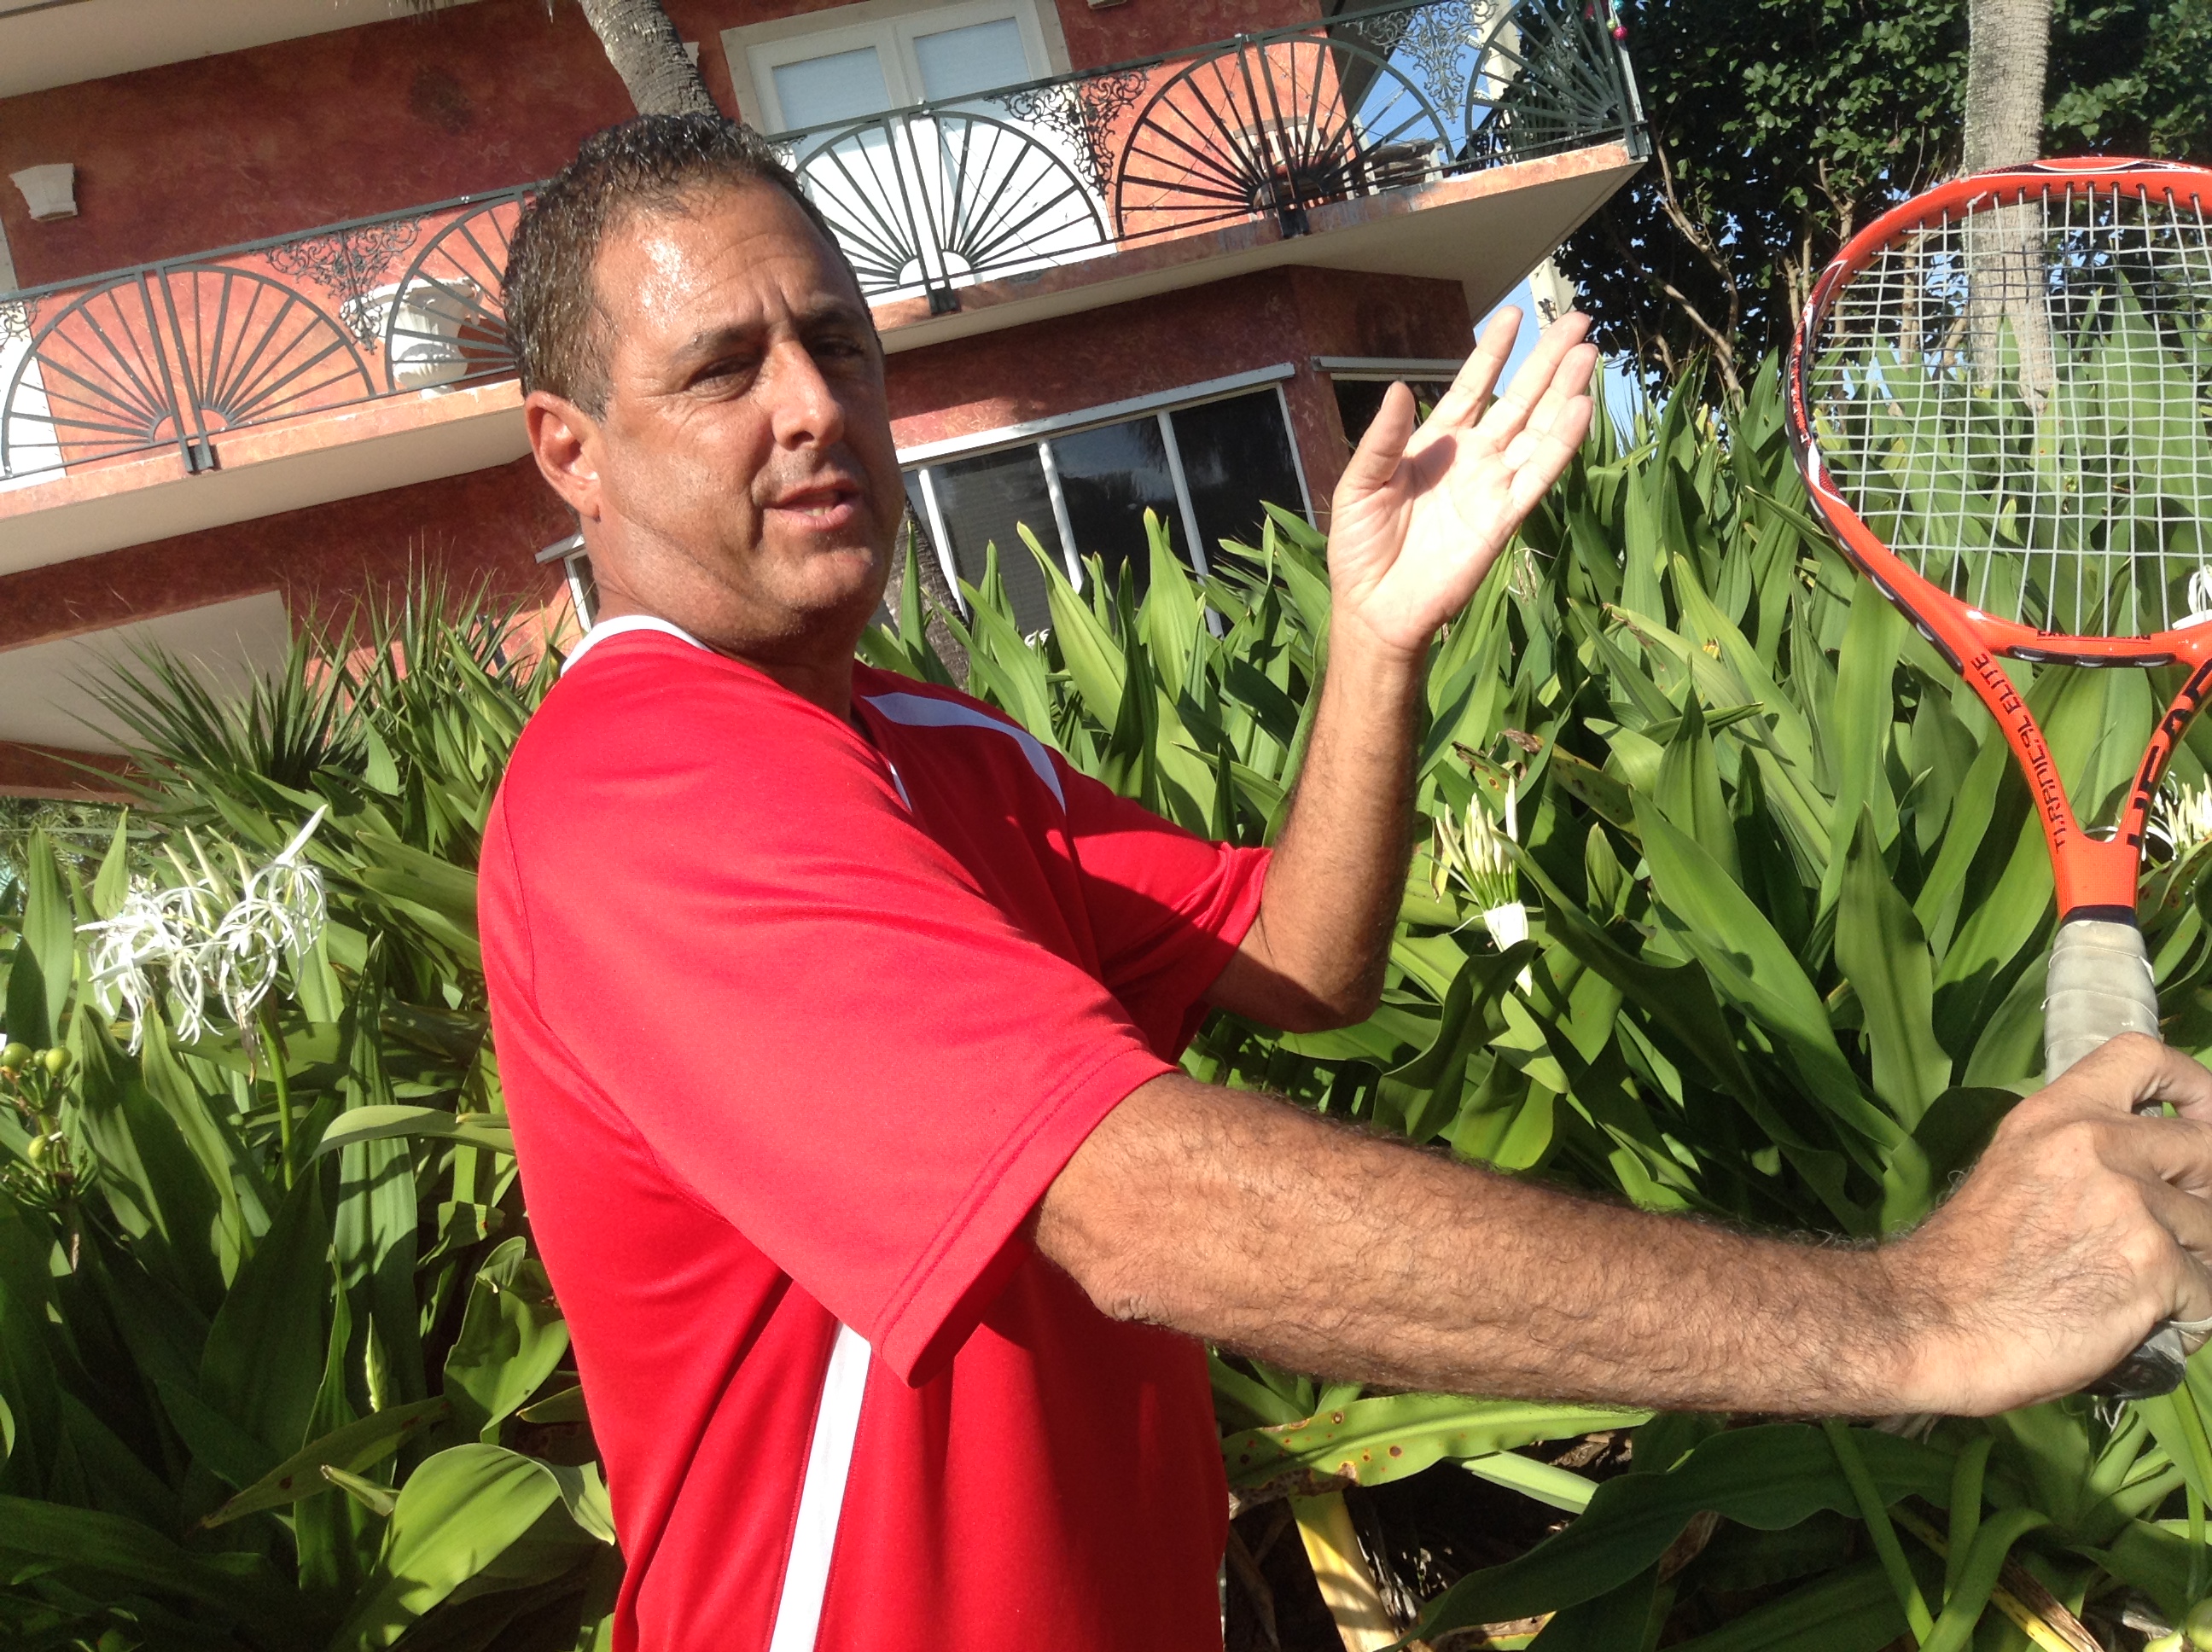 Jason G. teaches tennis lessons in Vero Beach, FL